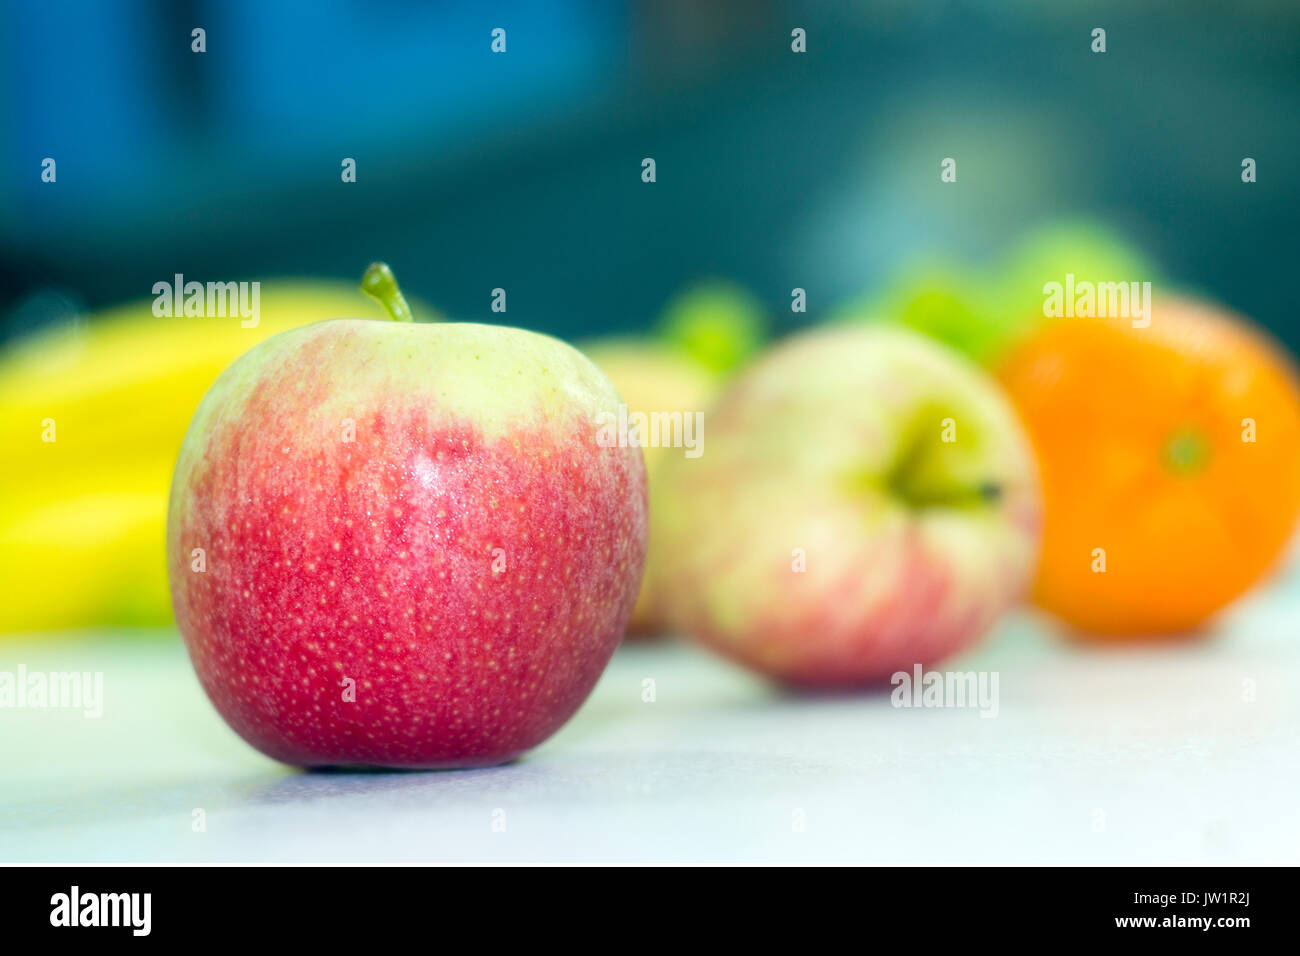 Manzana roja en meza con otras frutas desenfocadas, alimento saludable y natural con vitaminas, baja en calorías, apetecible y jugosa, de clima frío Stock Photo